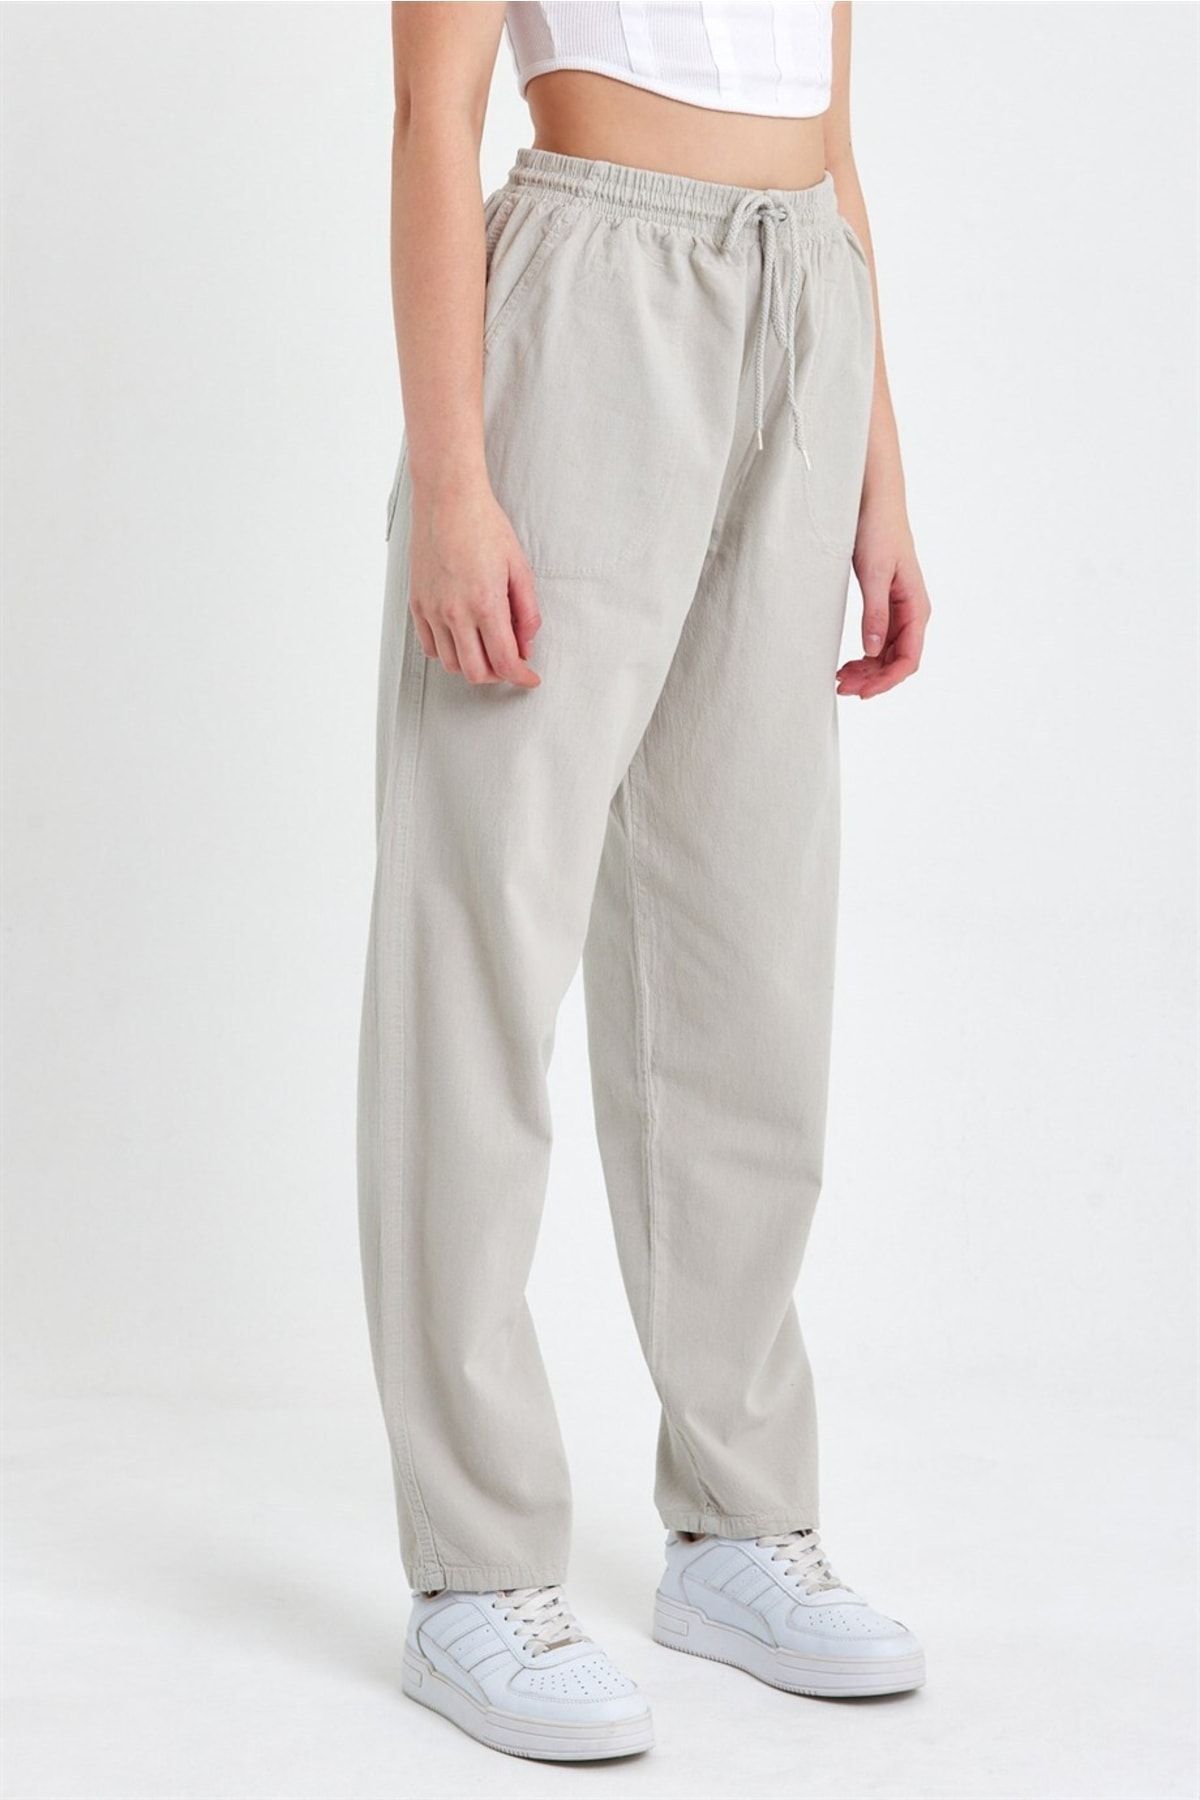 Grey Linen Look High Waist Wide Leg Pants